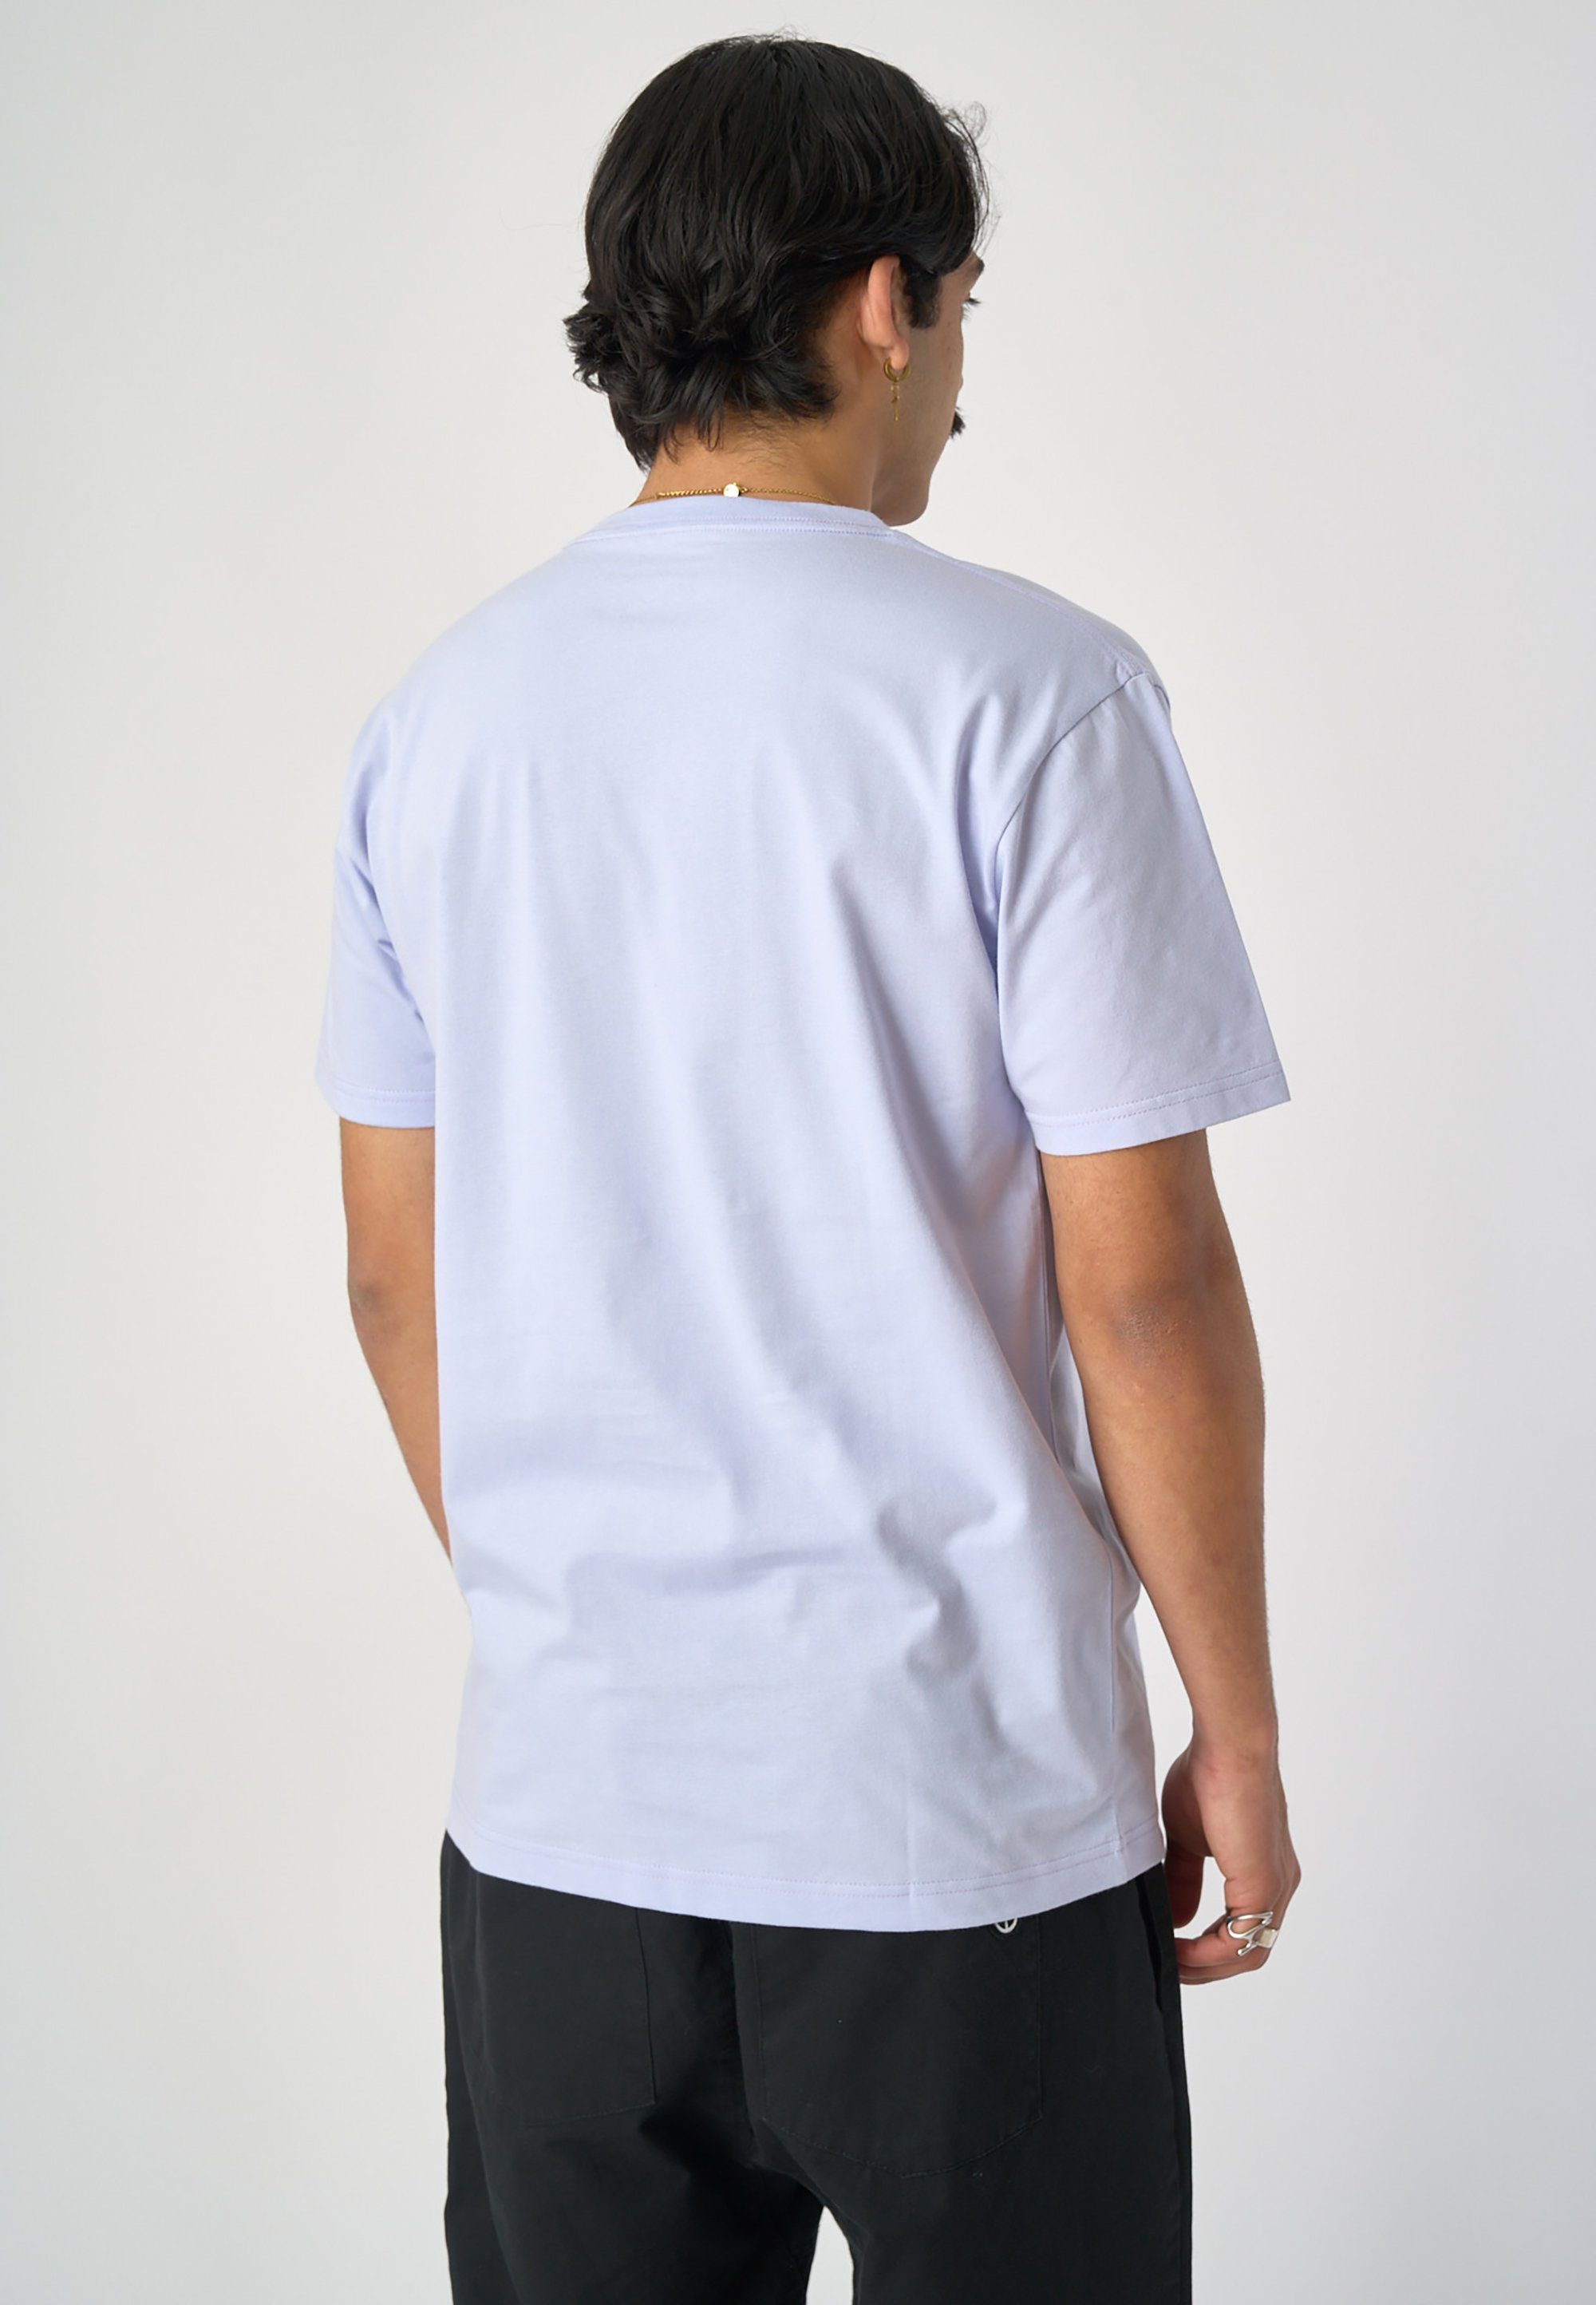 Schnitt Cleptomanicx hellblau T-Shirt mit lockerem Services